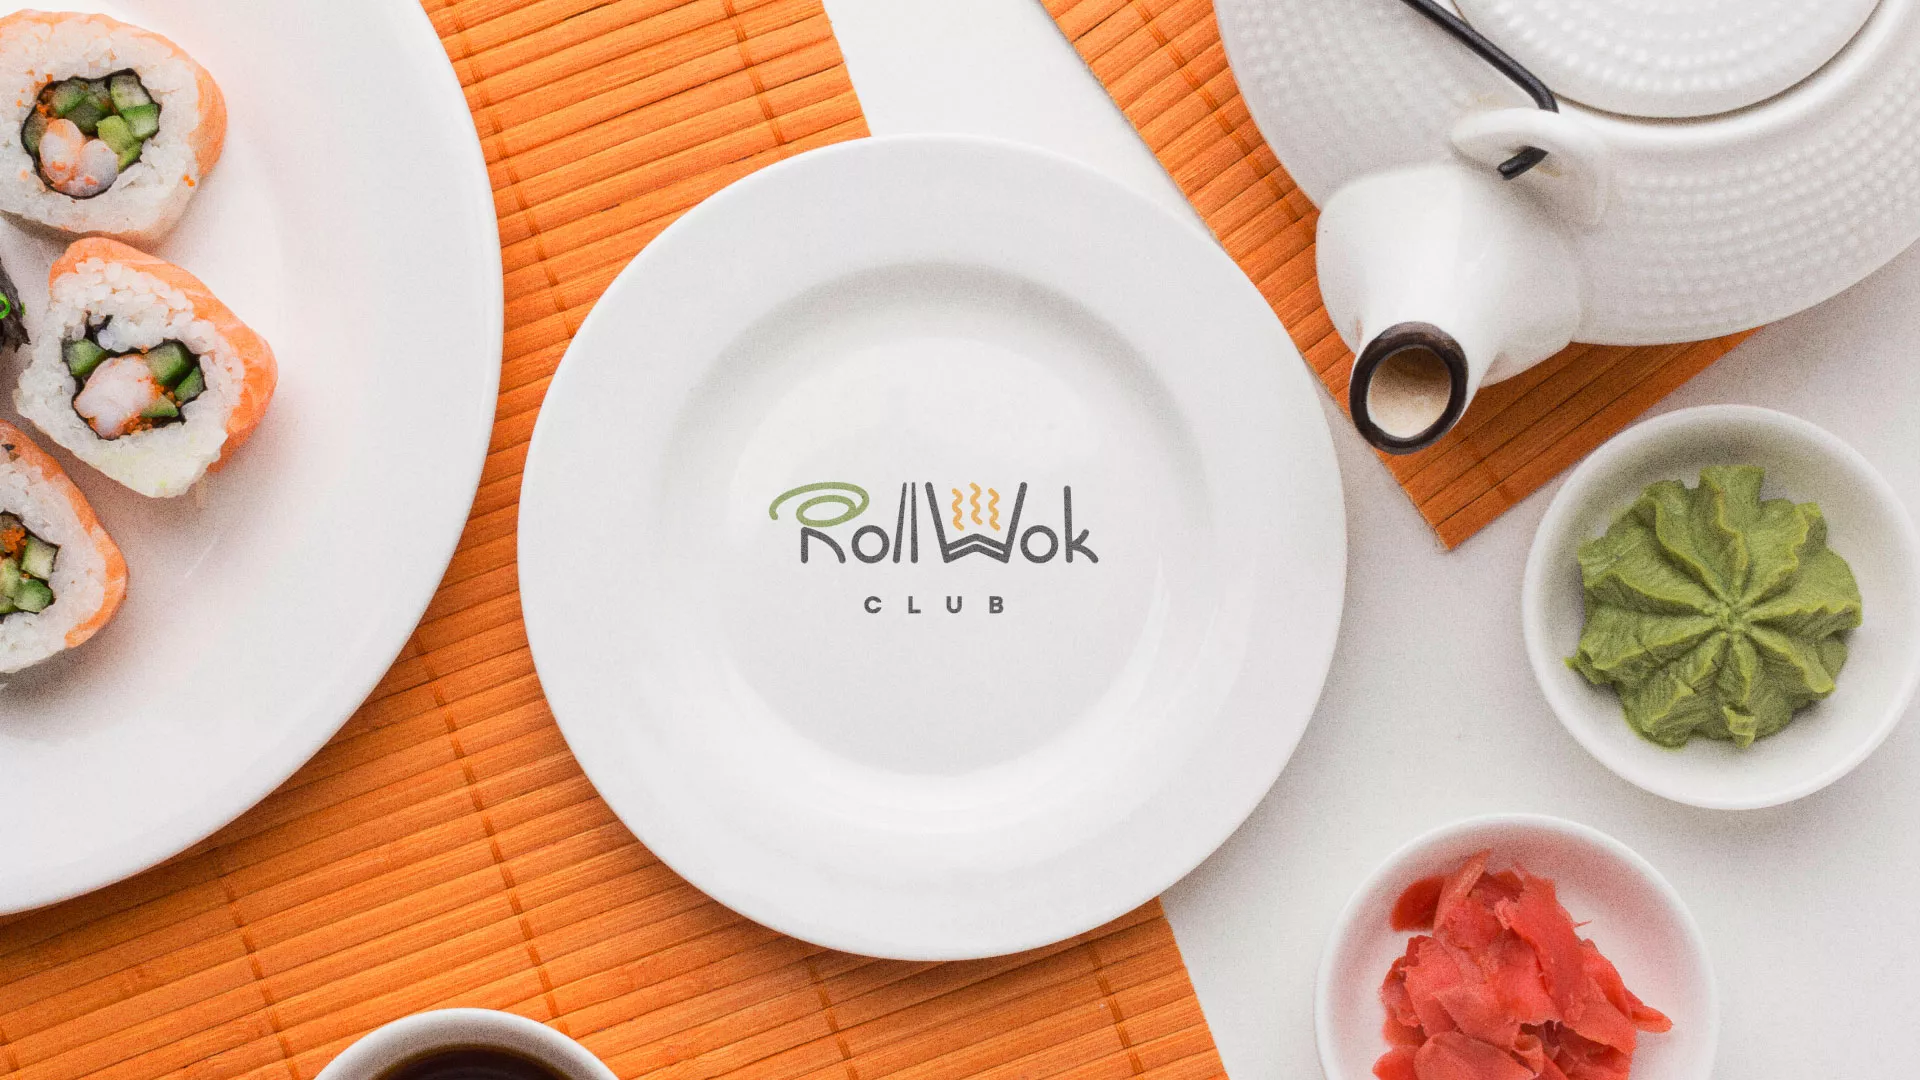 Разработка логотипа и фирменного стиля суши-бара «Roll Wok Club» в Шиханах